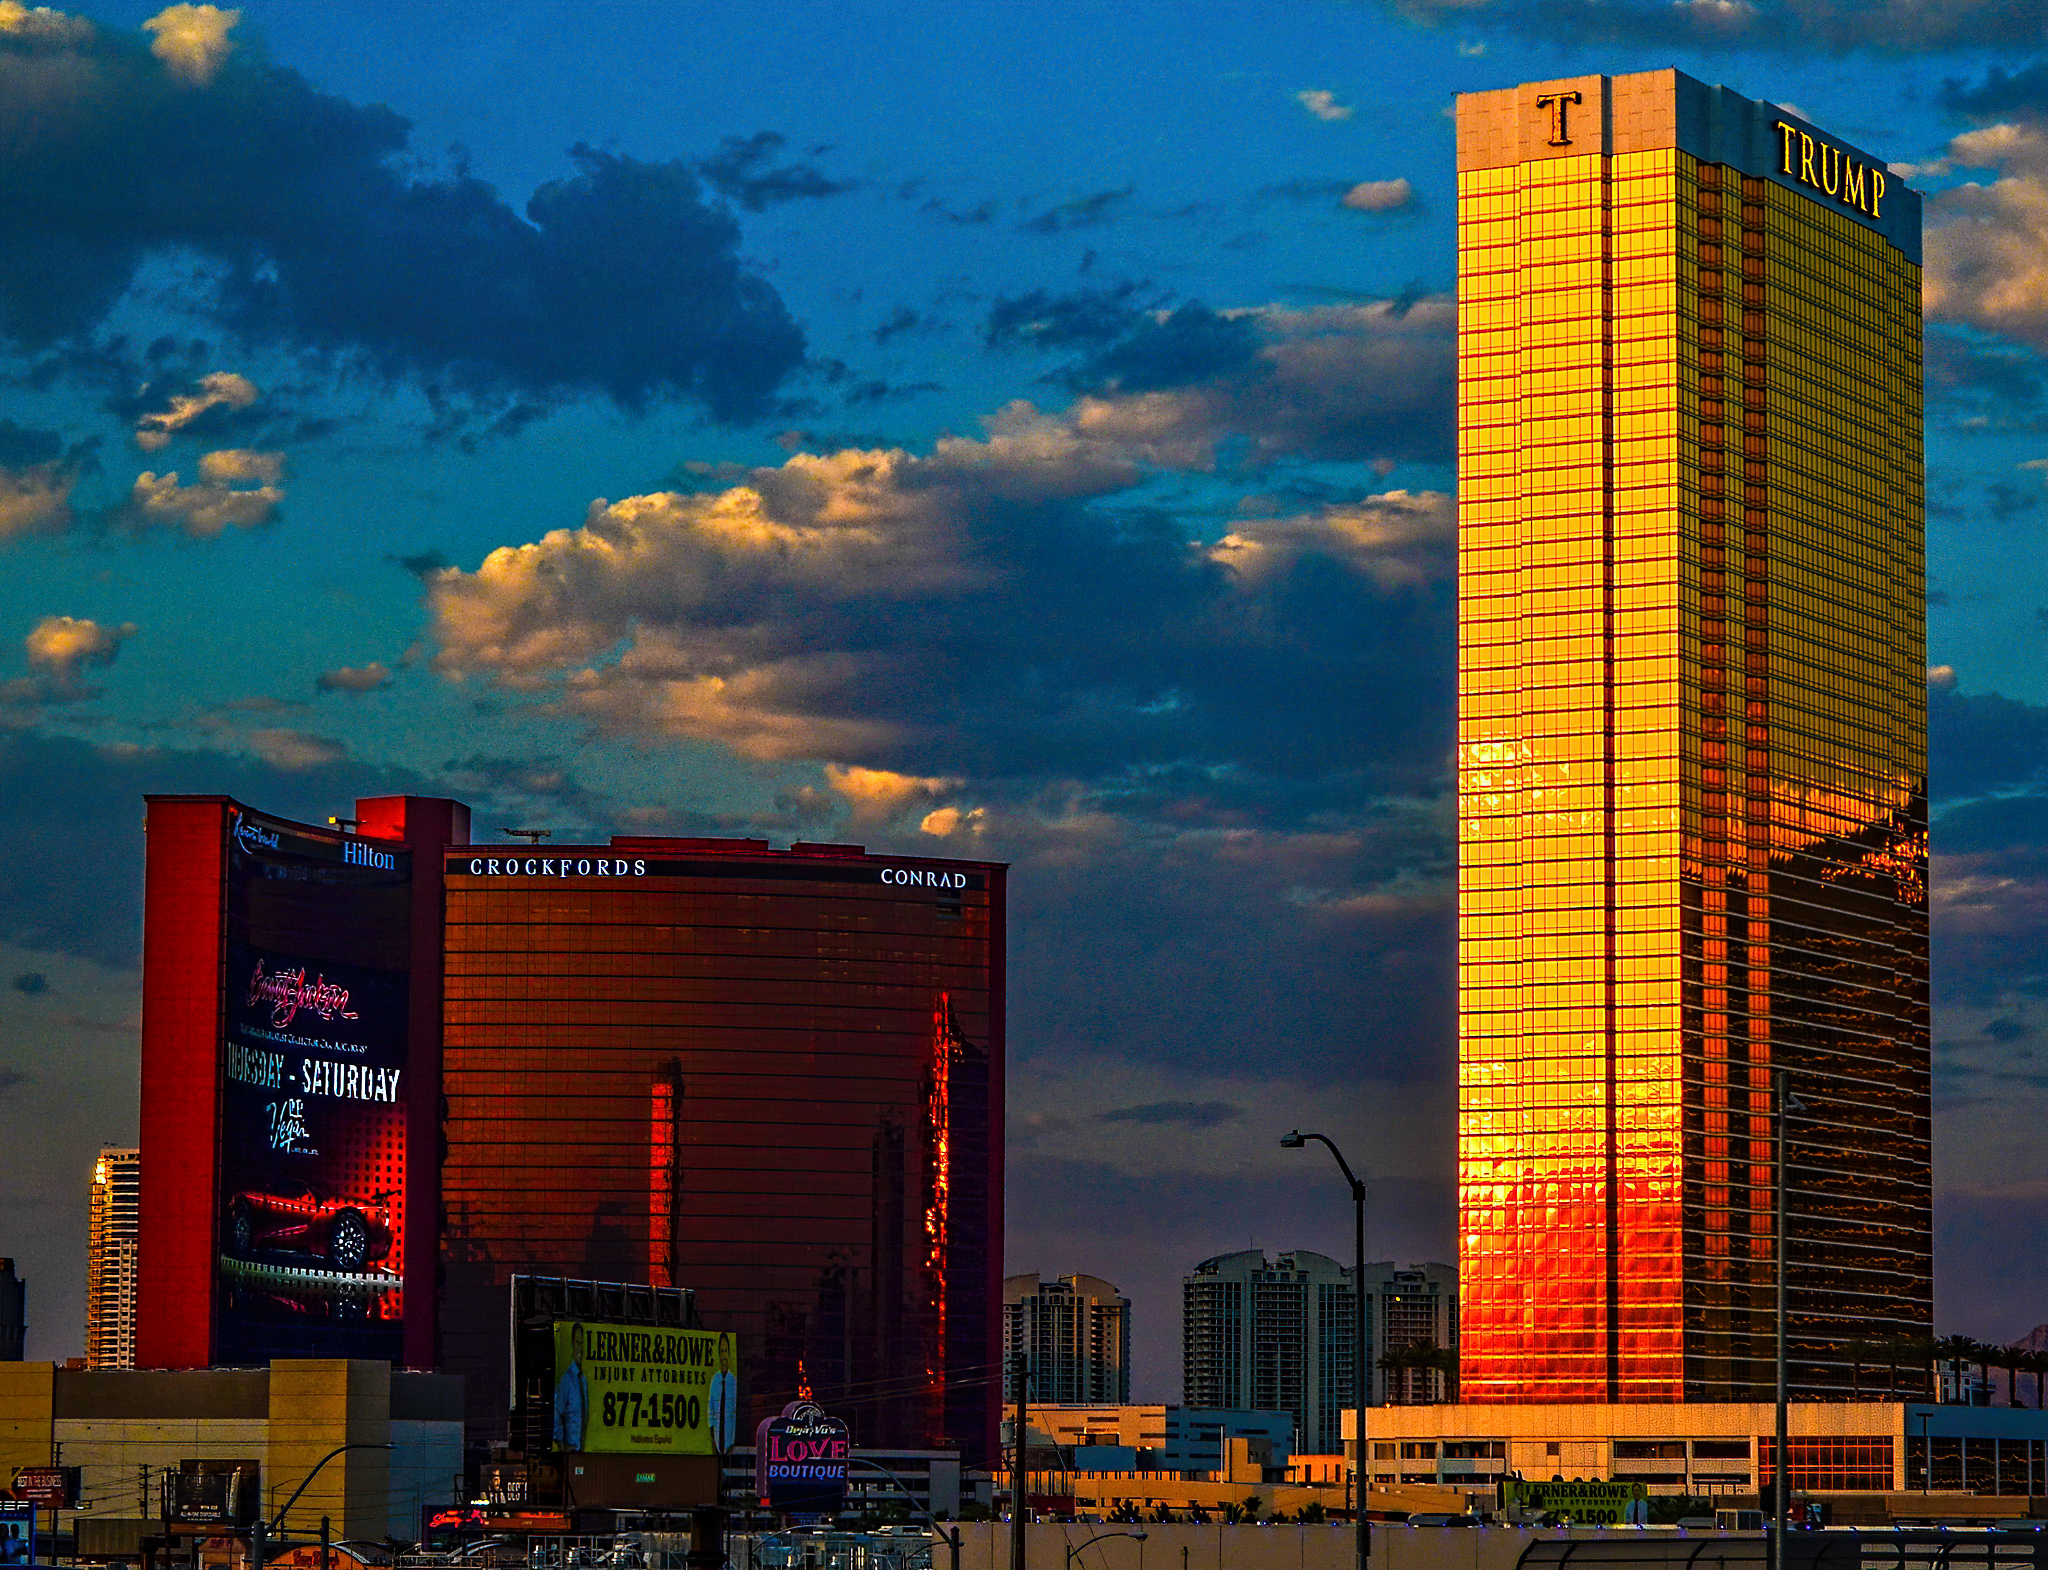 Resorts World Las Vegas - Wikipedia